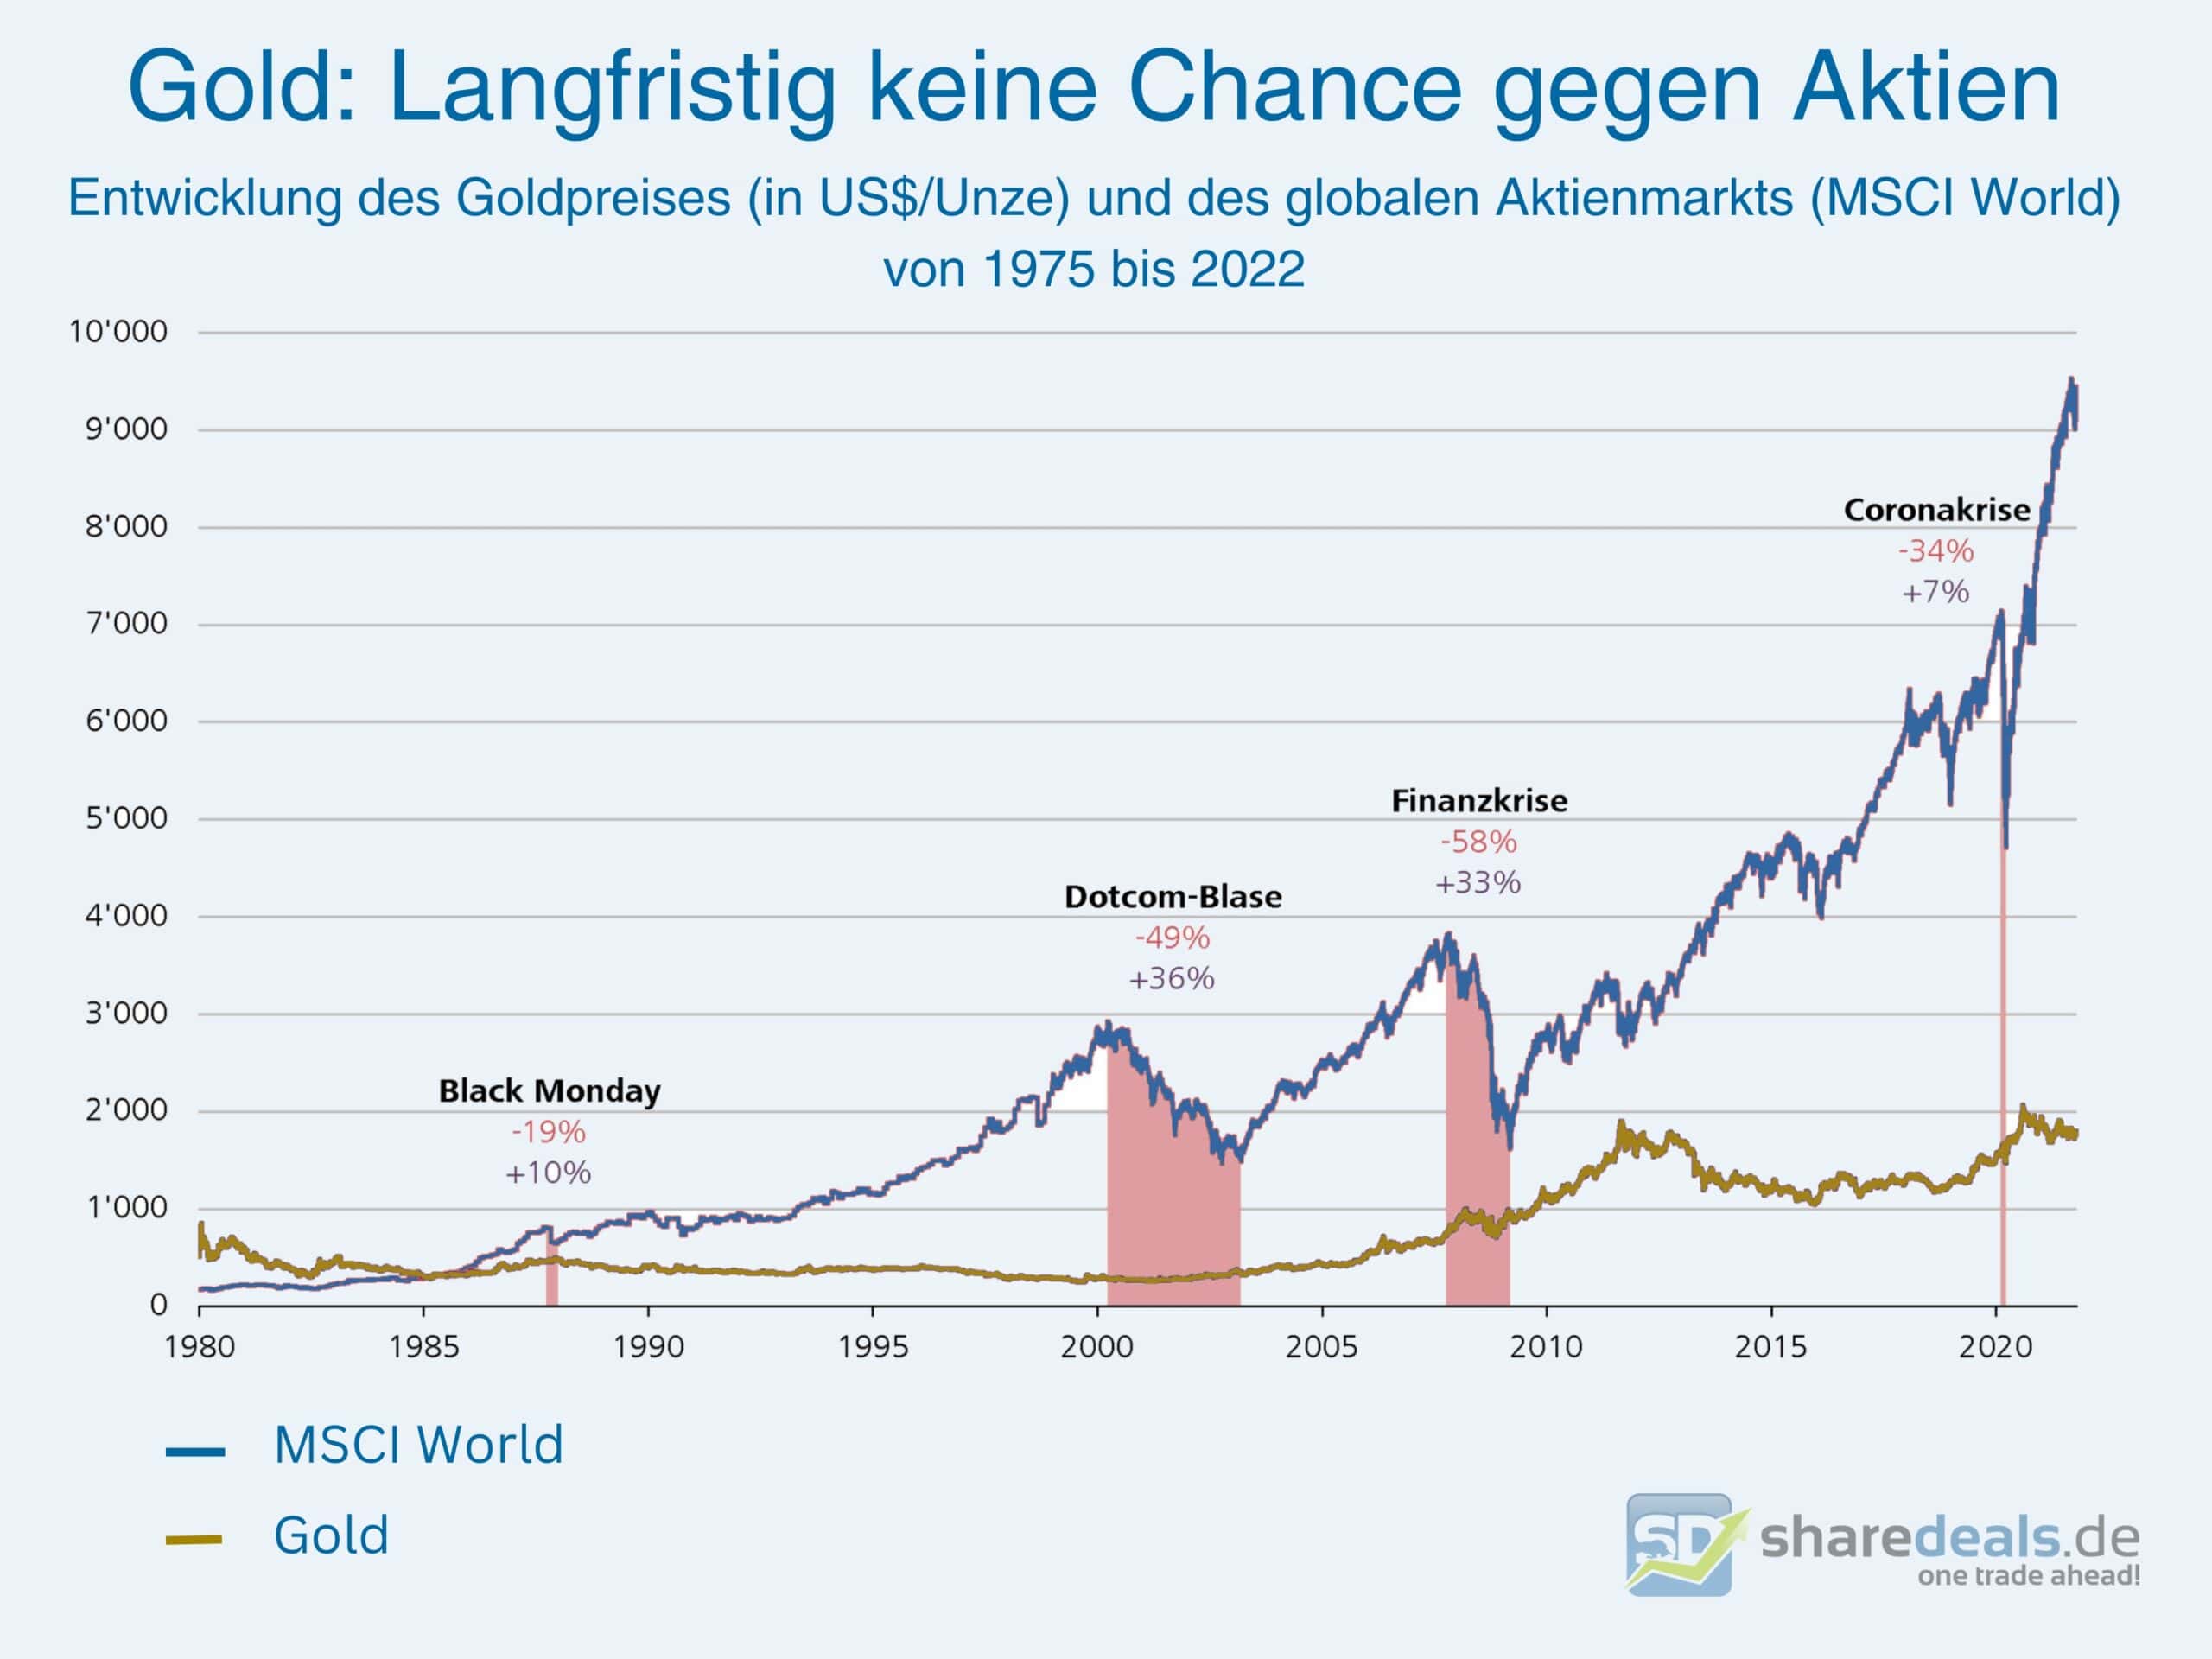 Gold im Vergleich mit Aktienmarkt MSCI World seit 1975